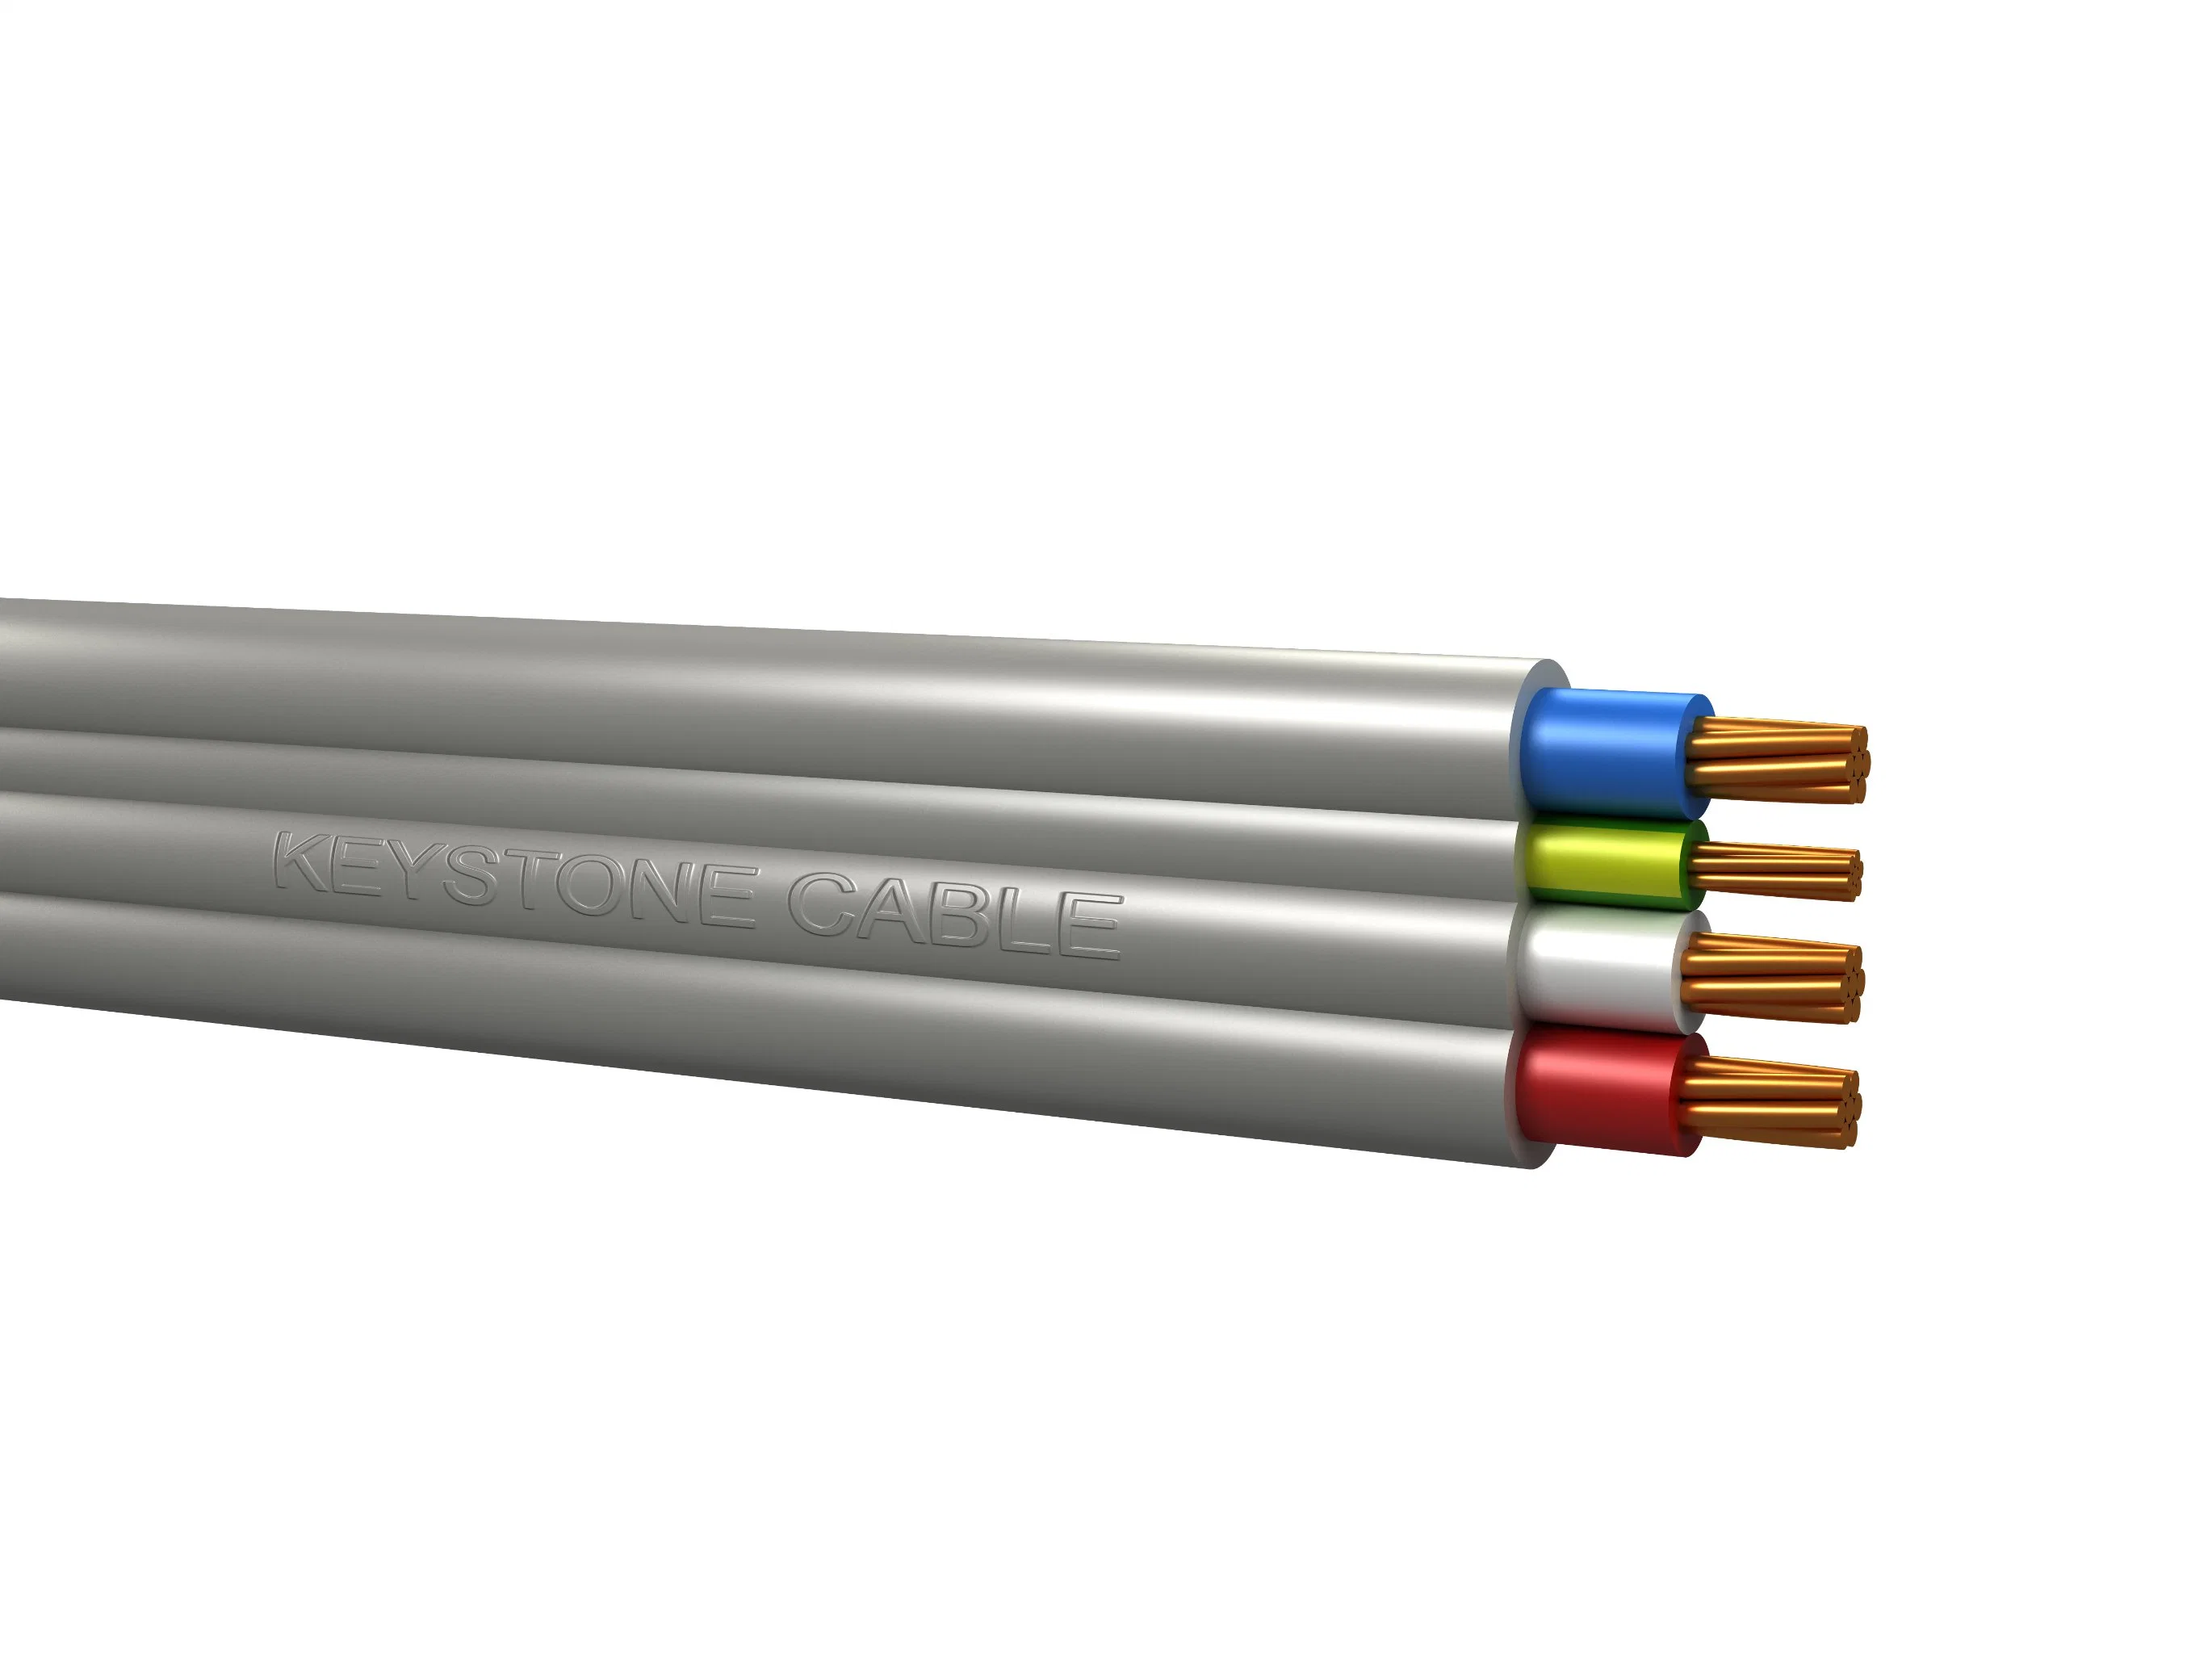 Плоский кабель ПВХ кабель, строительный провод Твин и заземляющий кабель соединительный провод, гибкий медный кабель Электрический провод и цены кабеля 2192y Электрический провод ТПС кабель